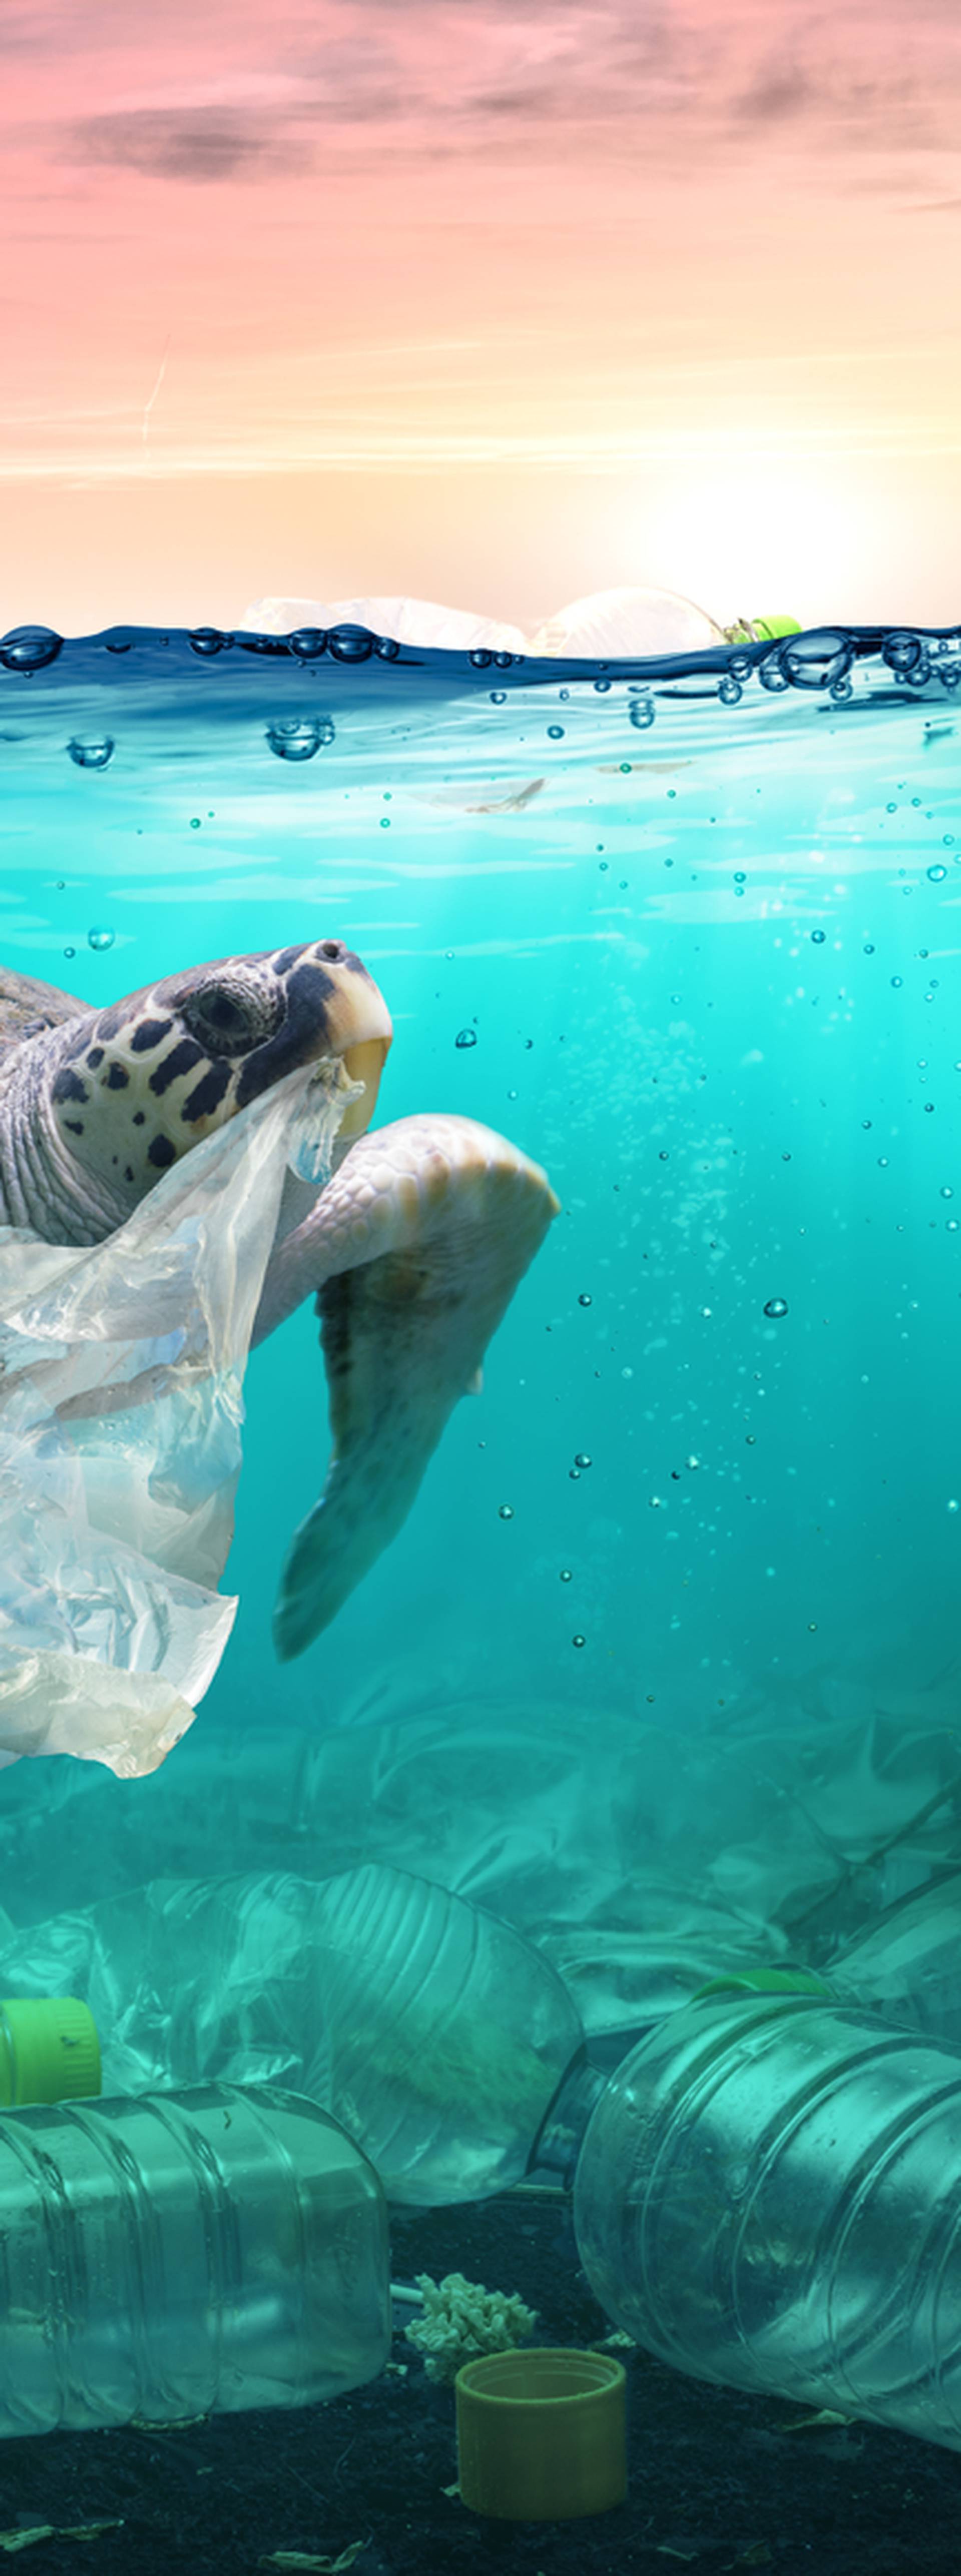 Potrošnja plastike i otpada bit će tri puta veća do 2060. godine